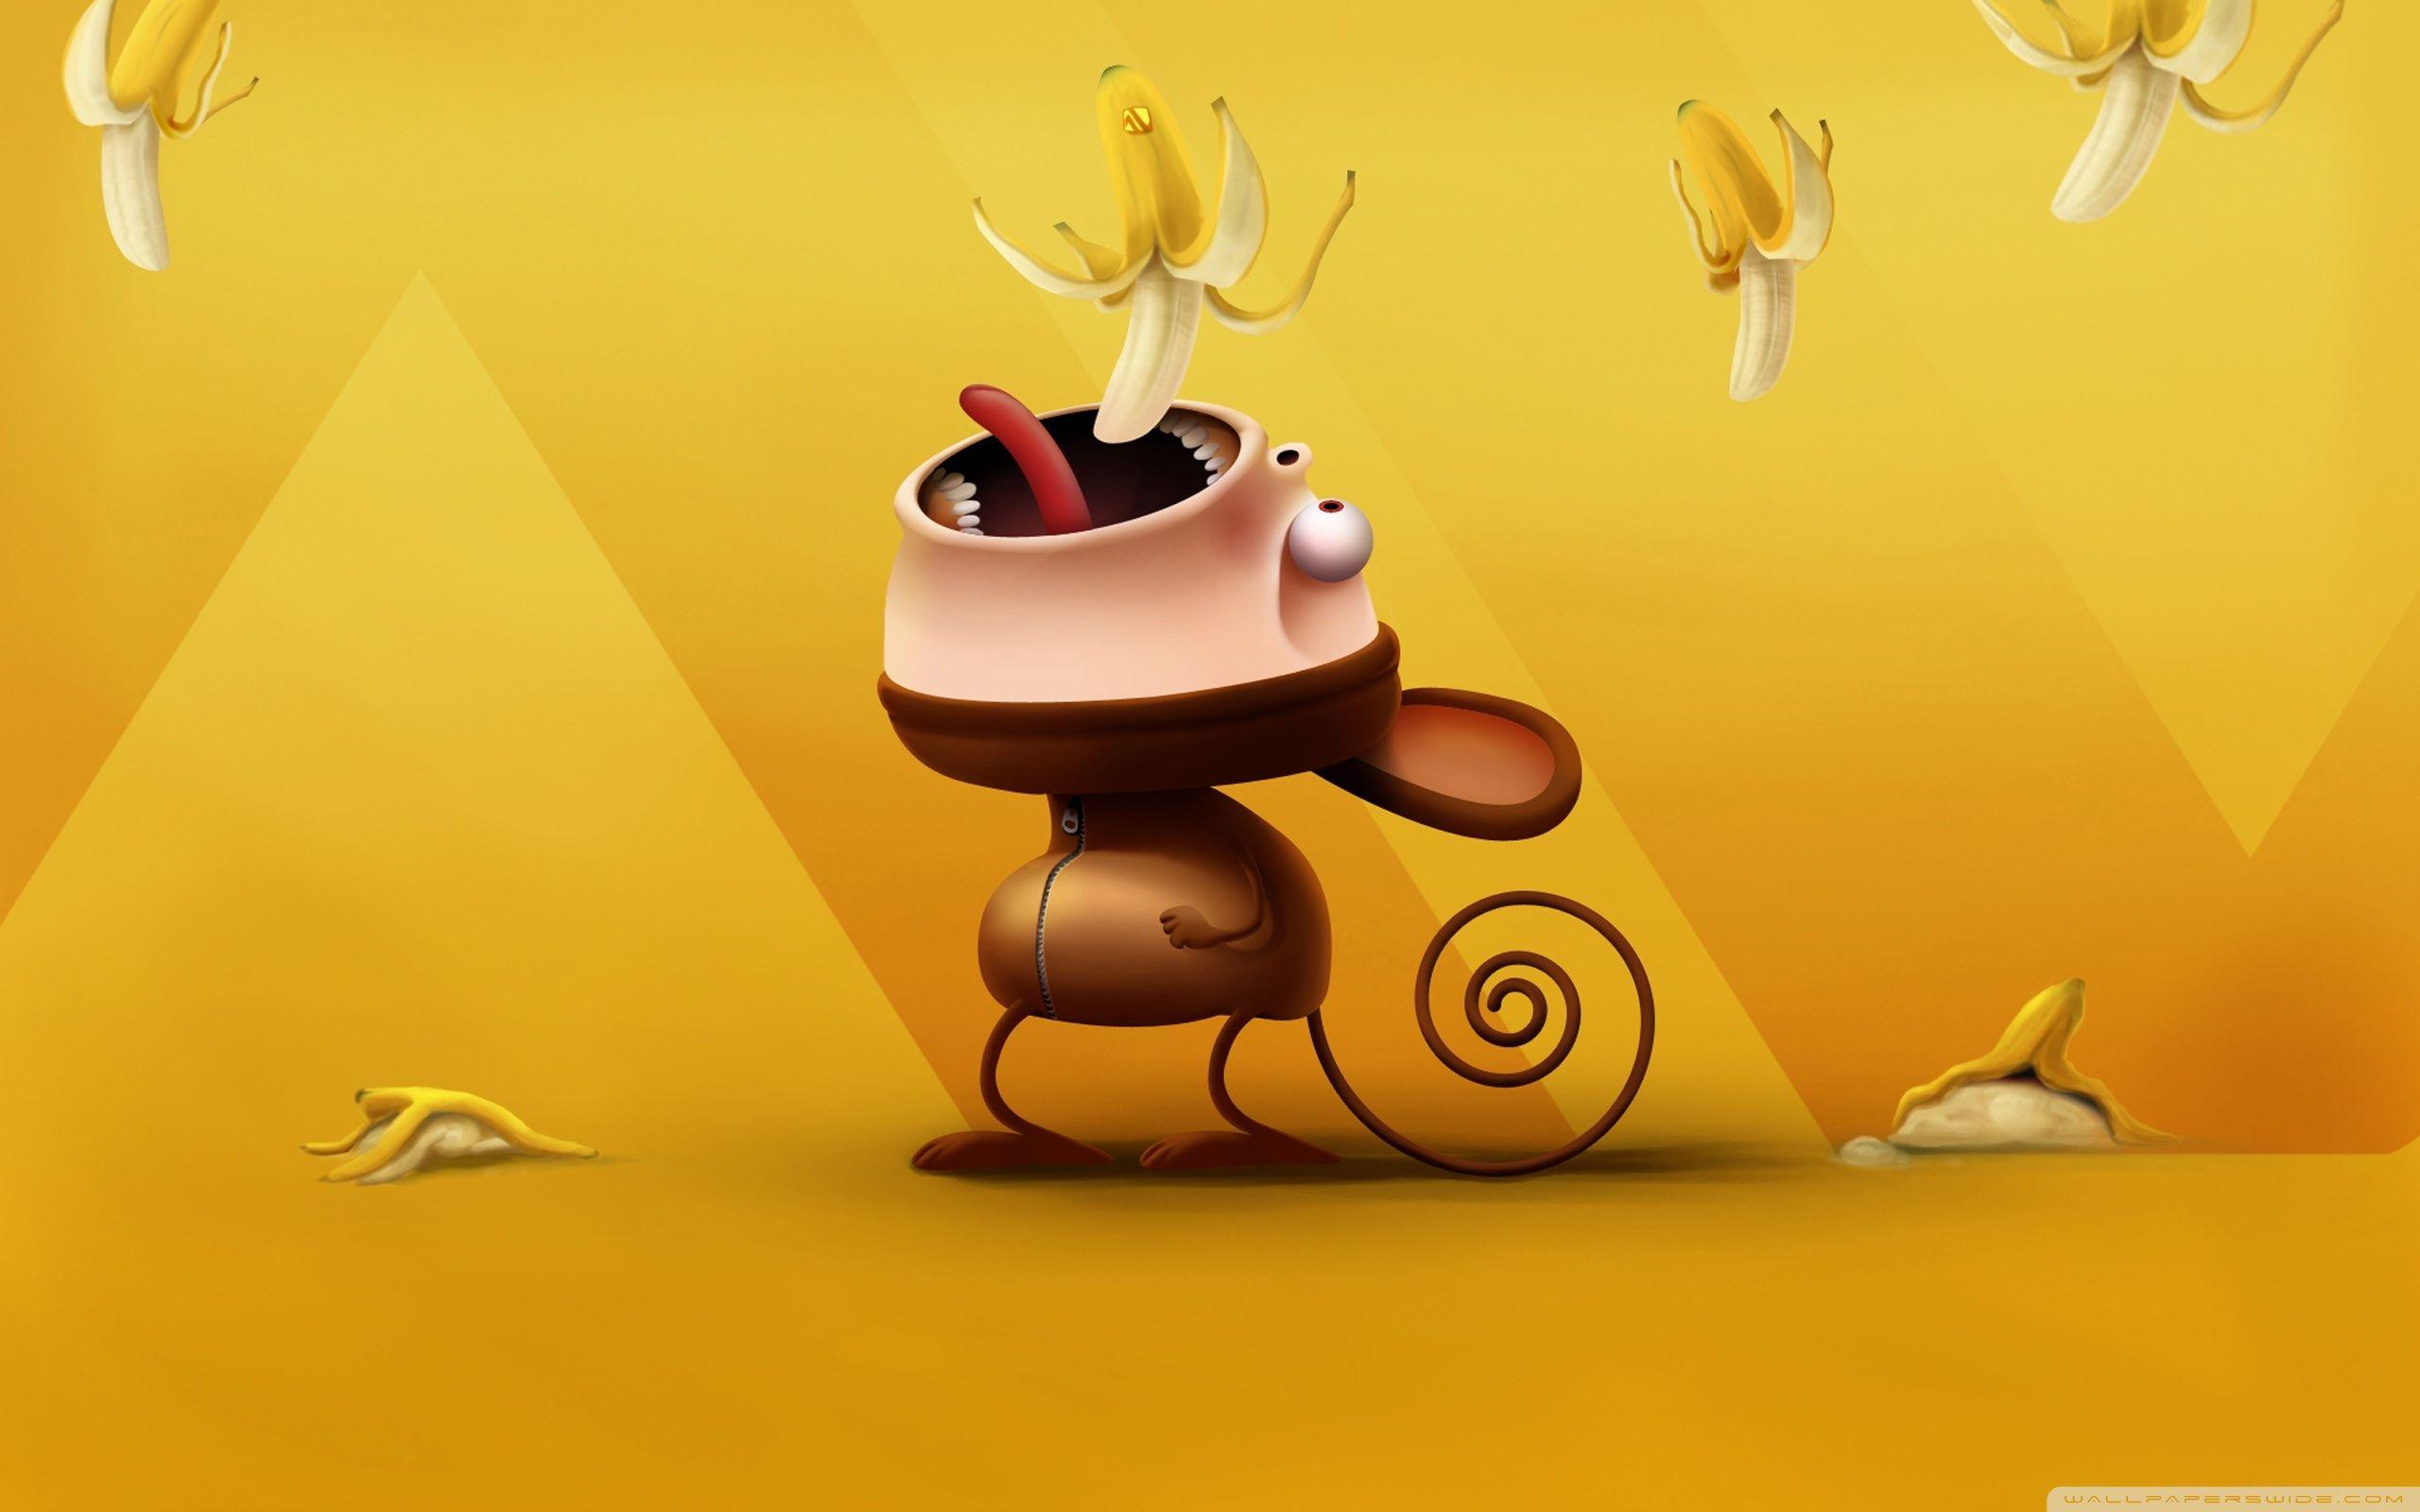 Funny Monkey Eating Bananas ❤ 4K HD Desktop Wallpaper for 4K Ultra